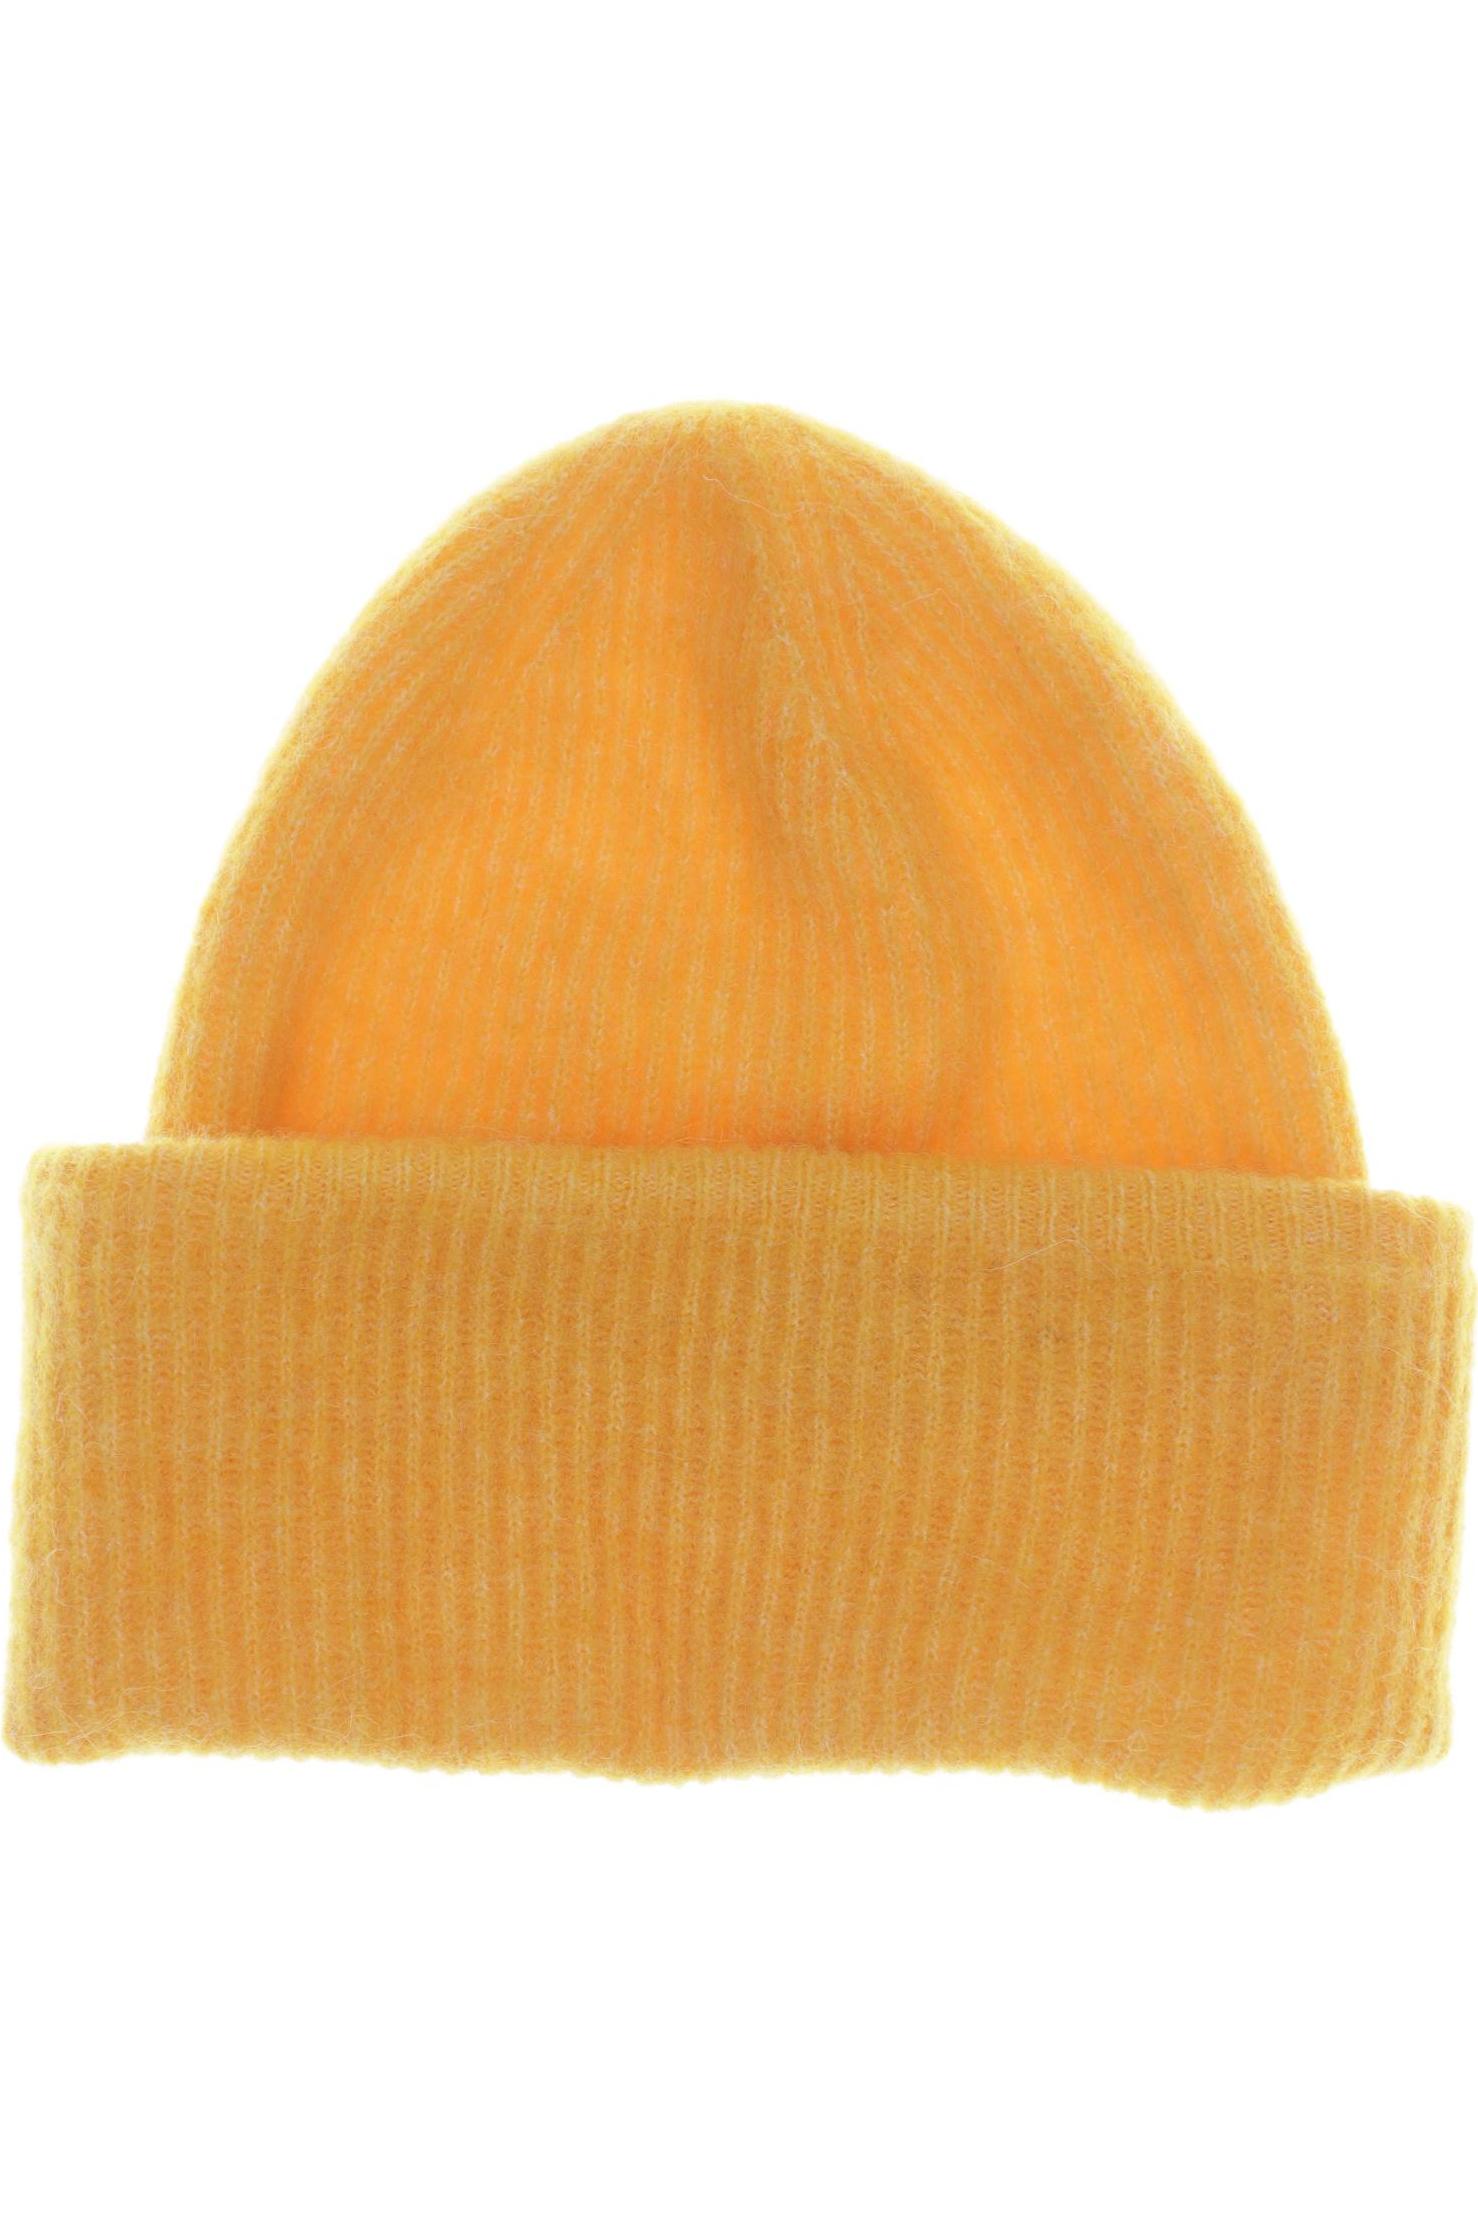 Samsoe & Samsoe Damen Hut/Mütze, orange von Samsoe & Samsoe